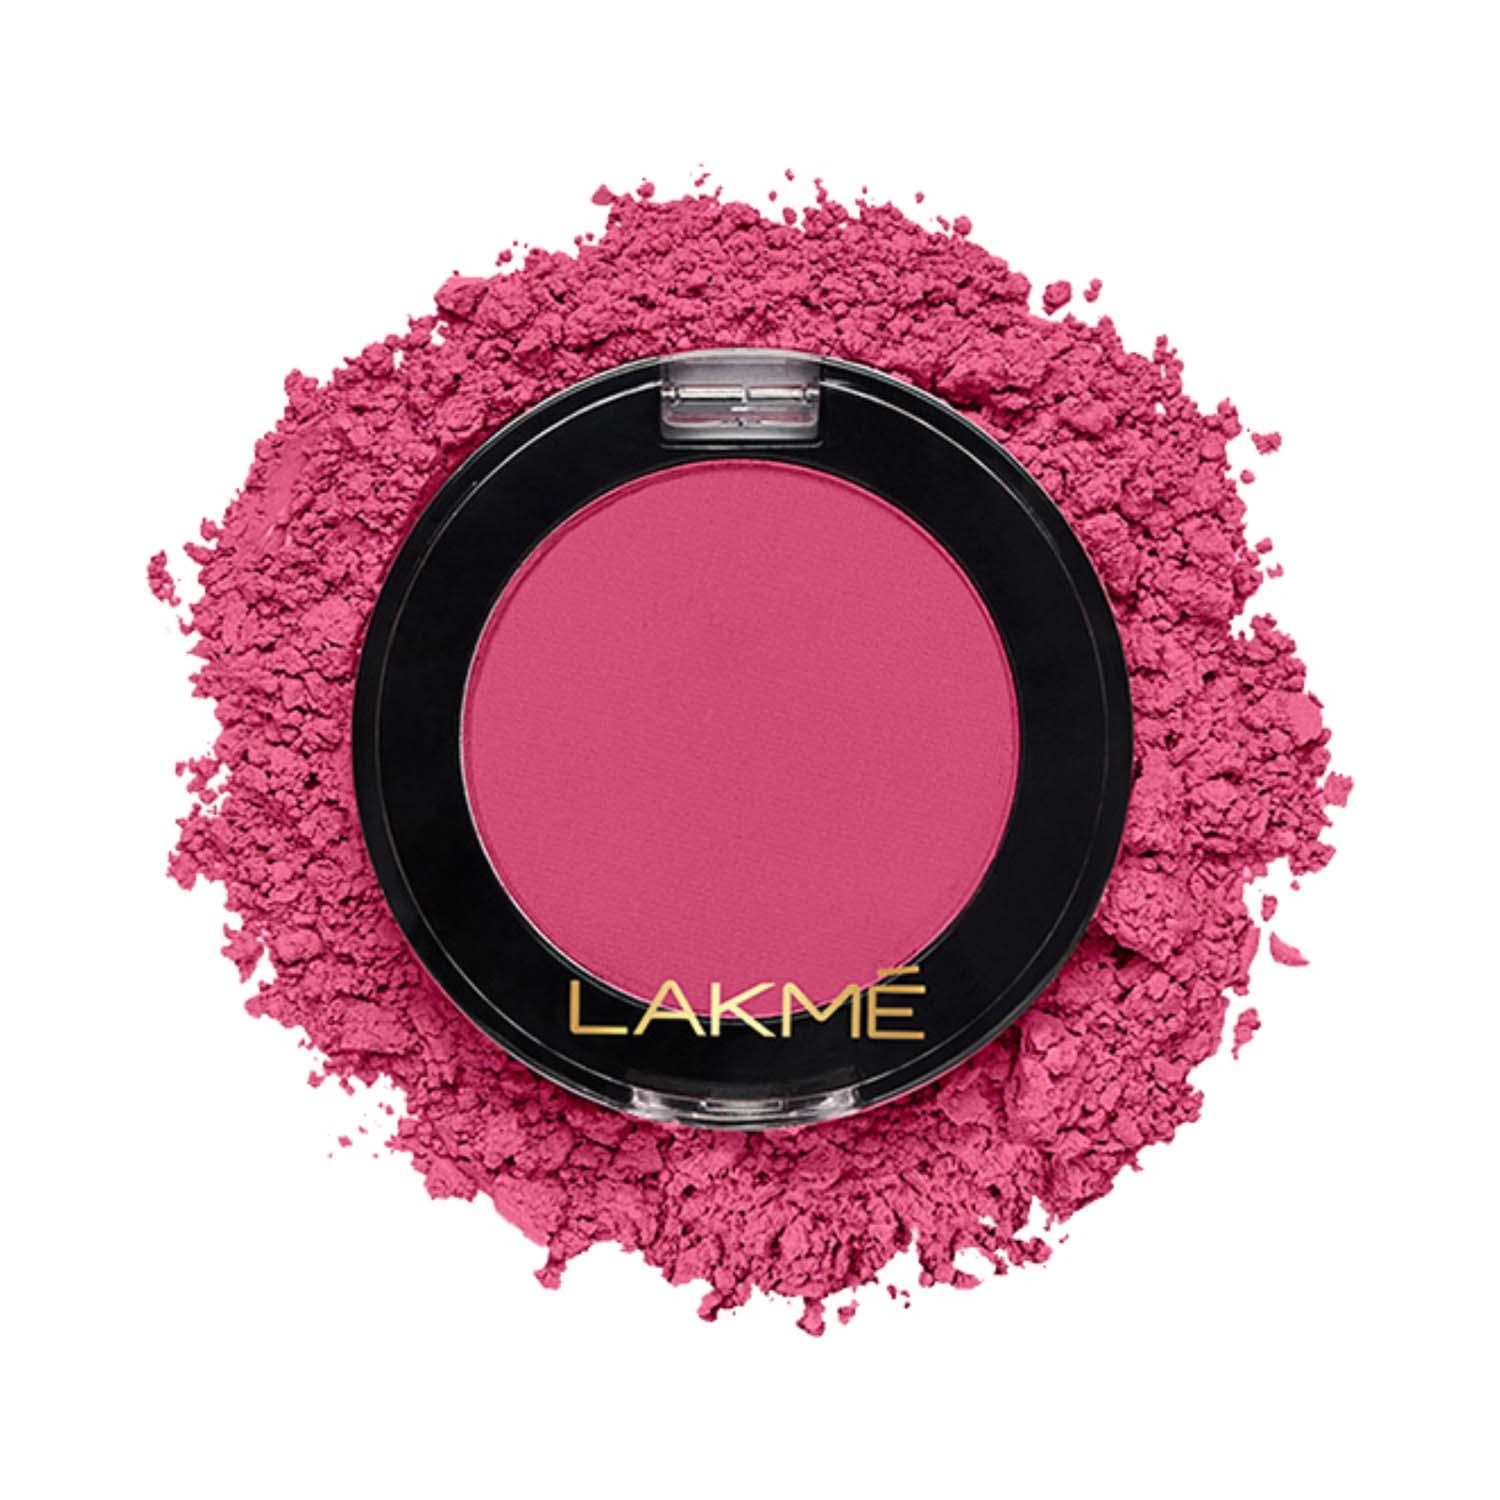 Lakme | Lakme Face It Blush - B2 Flushed Pink (4g)